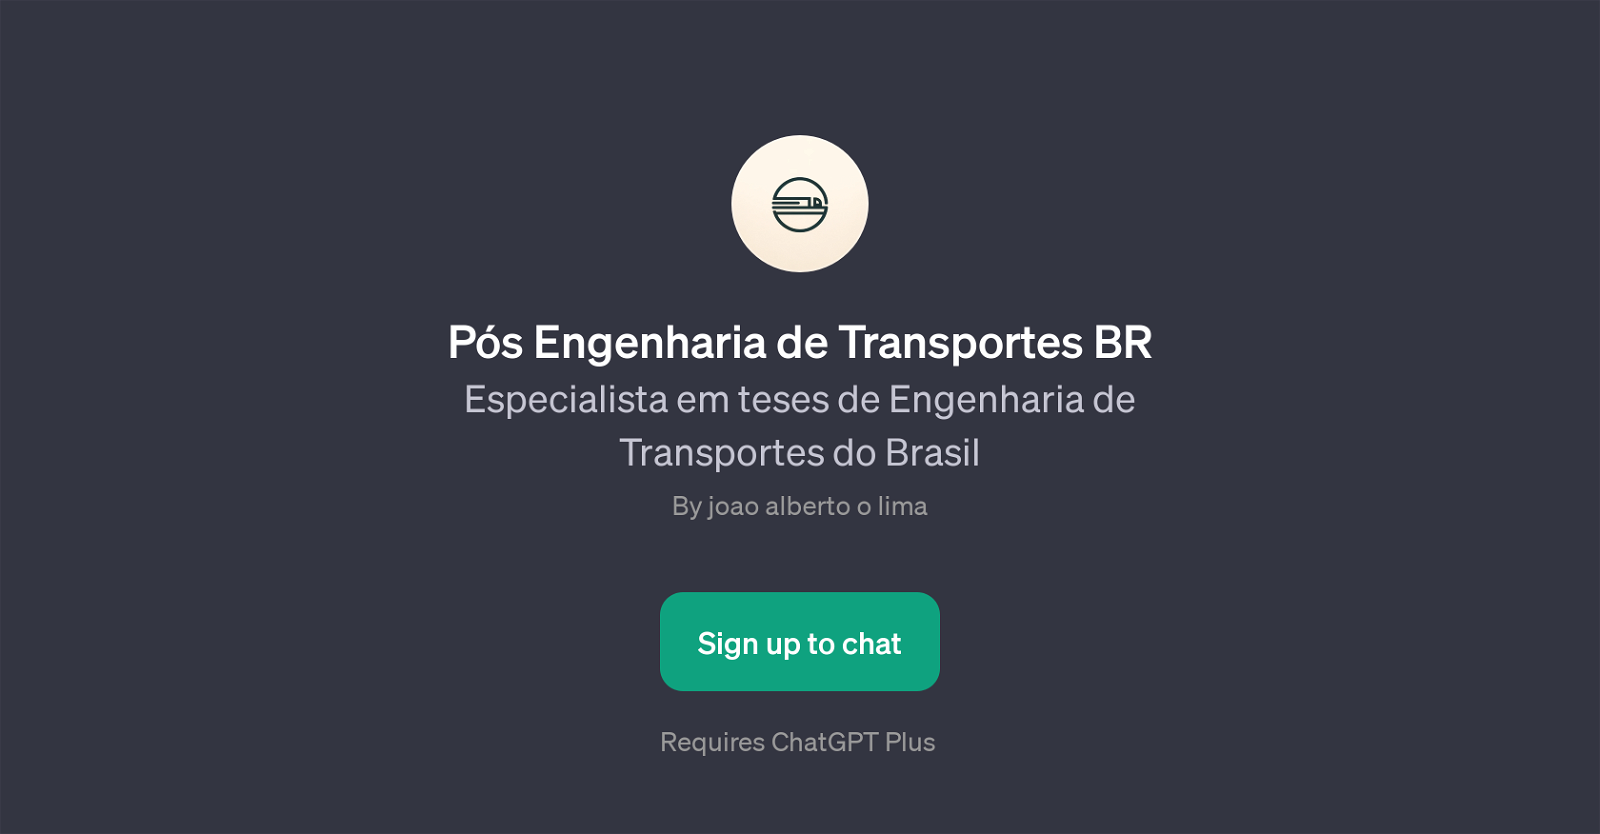 Ps Engenharia de Transportes BR website